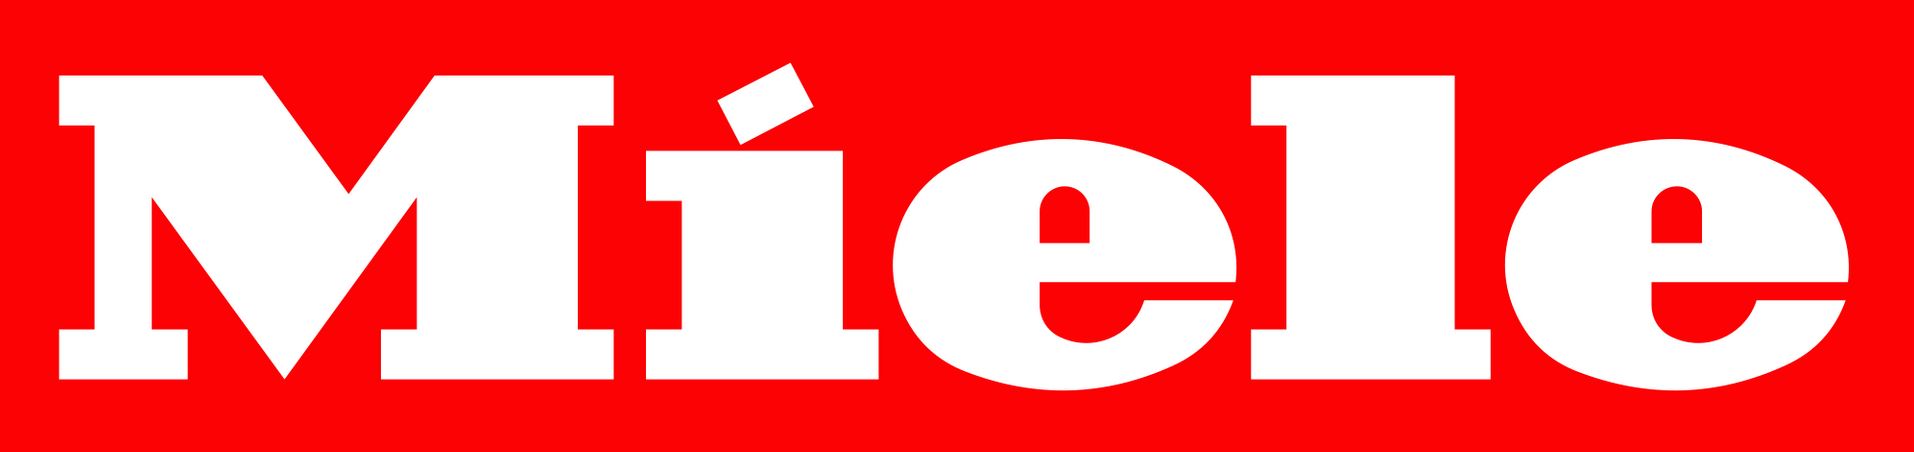 logo de la marque Miele